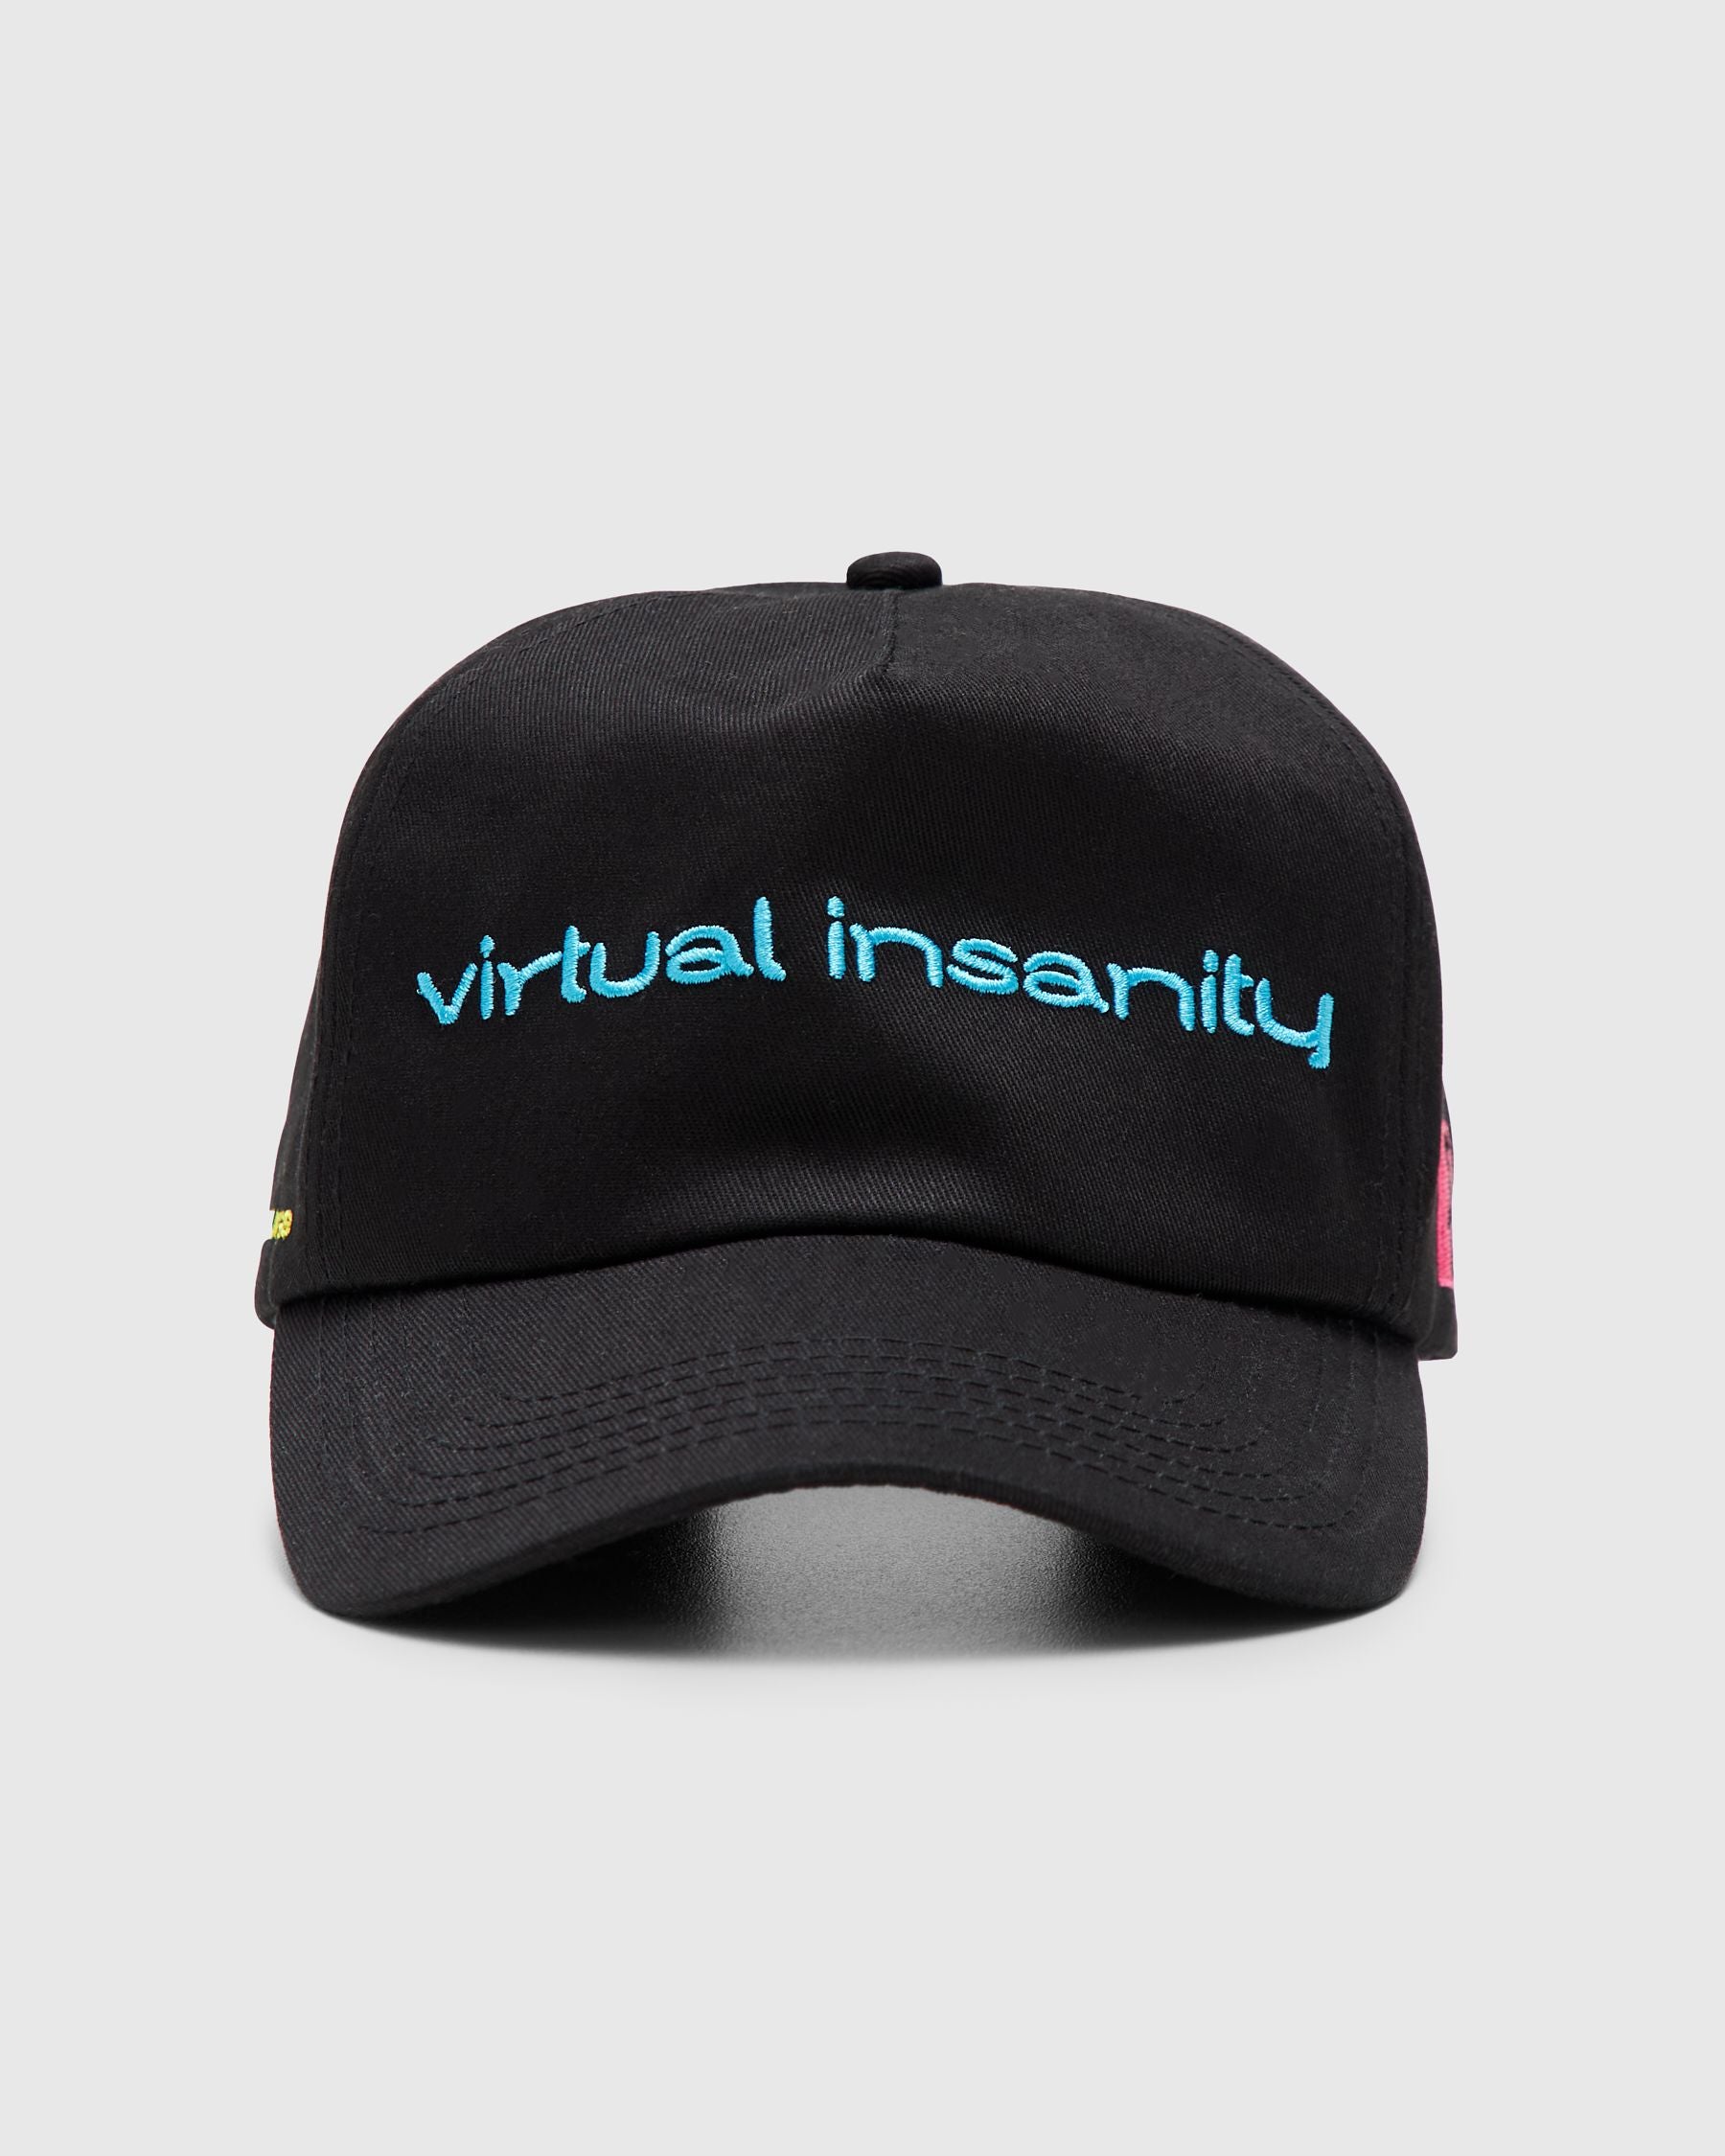 Virtual Insanity Snapback in Black